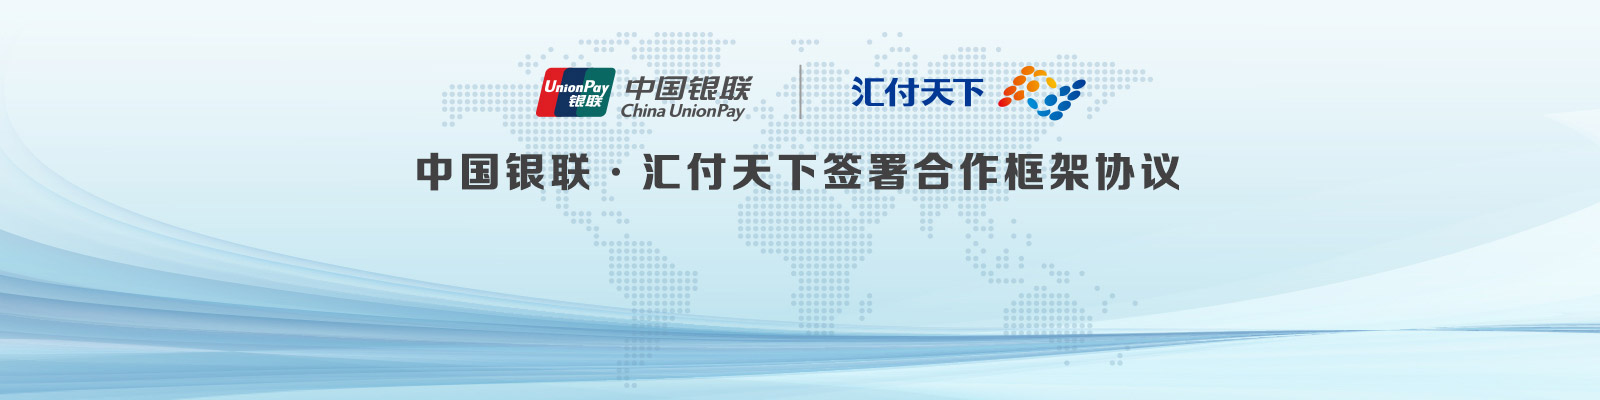 中国银联和汇付天下签署合作框架协议